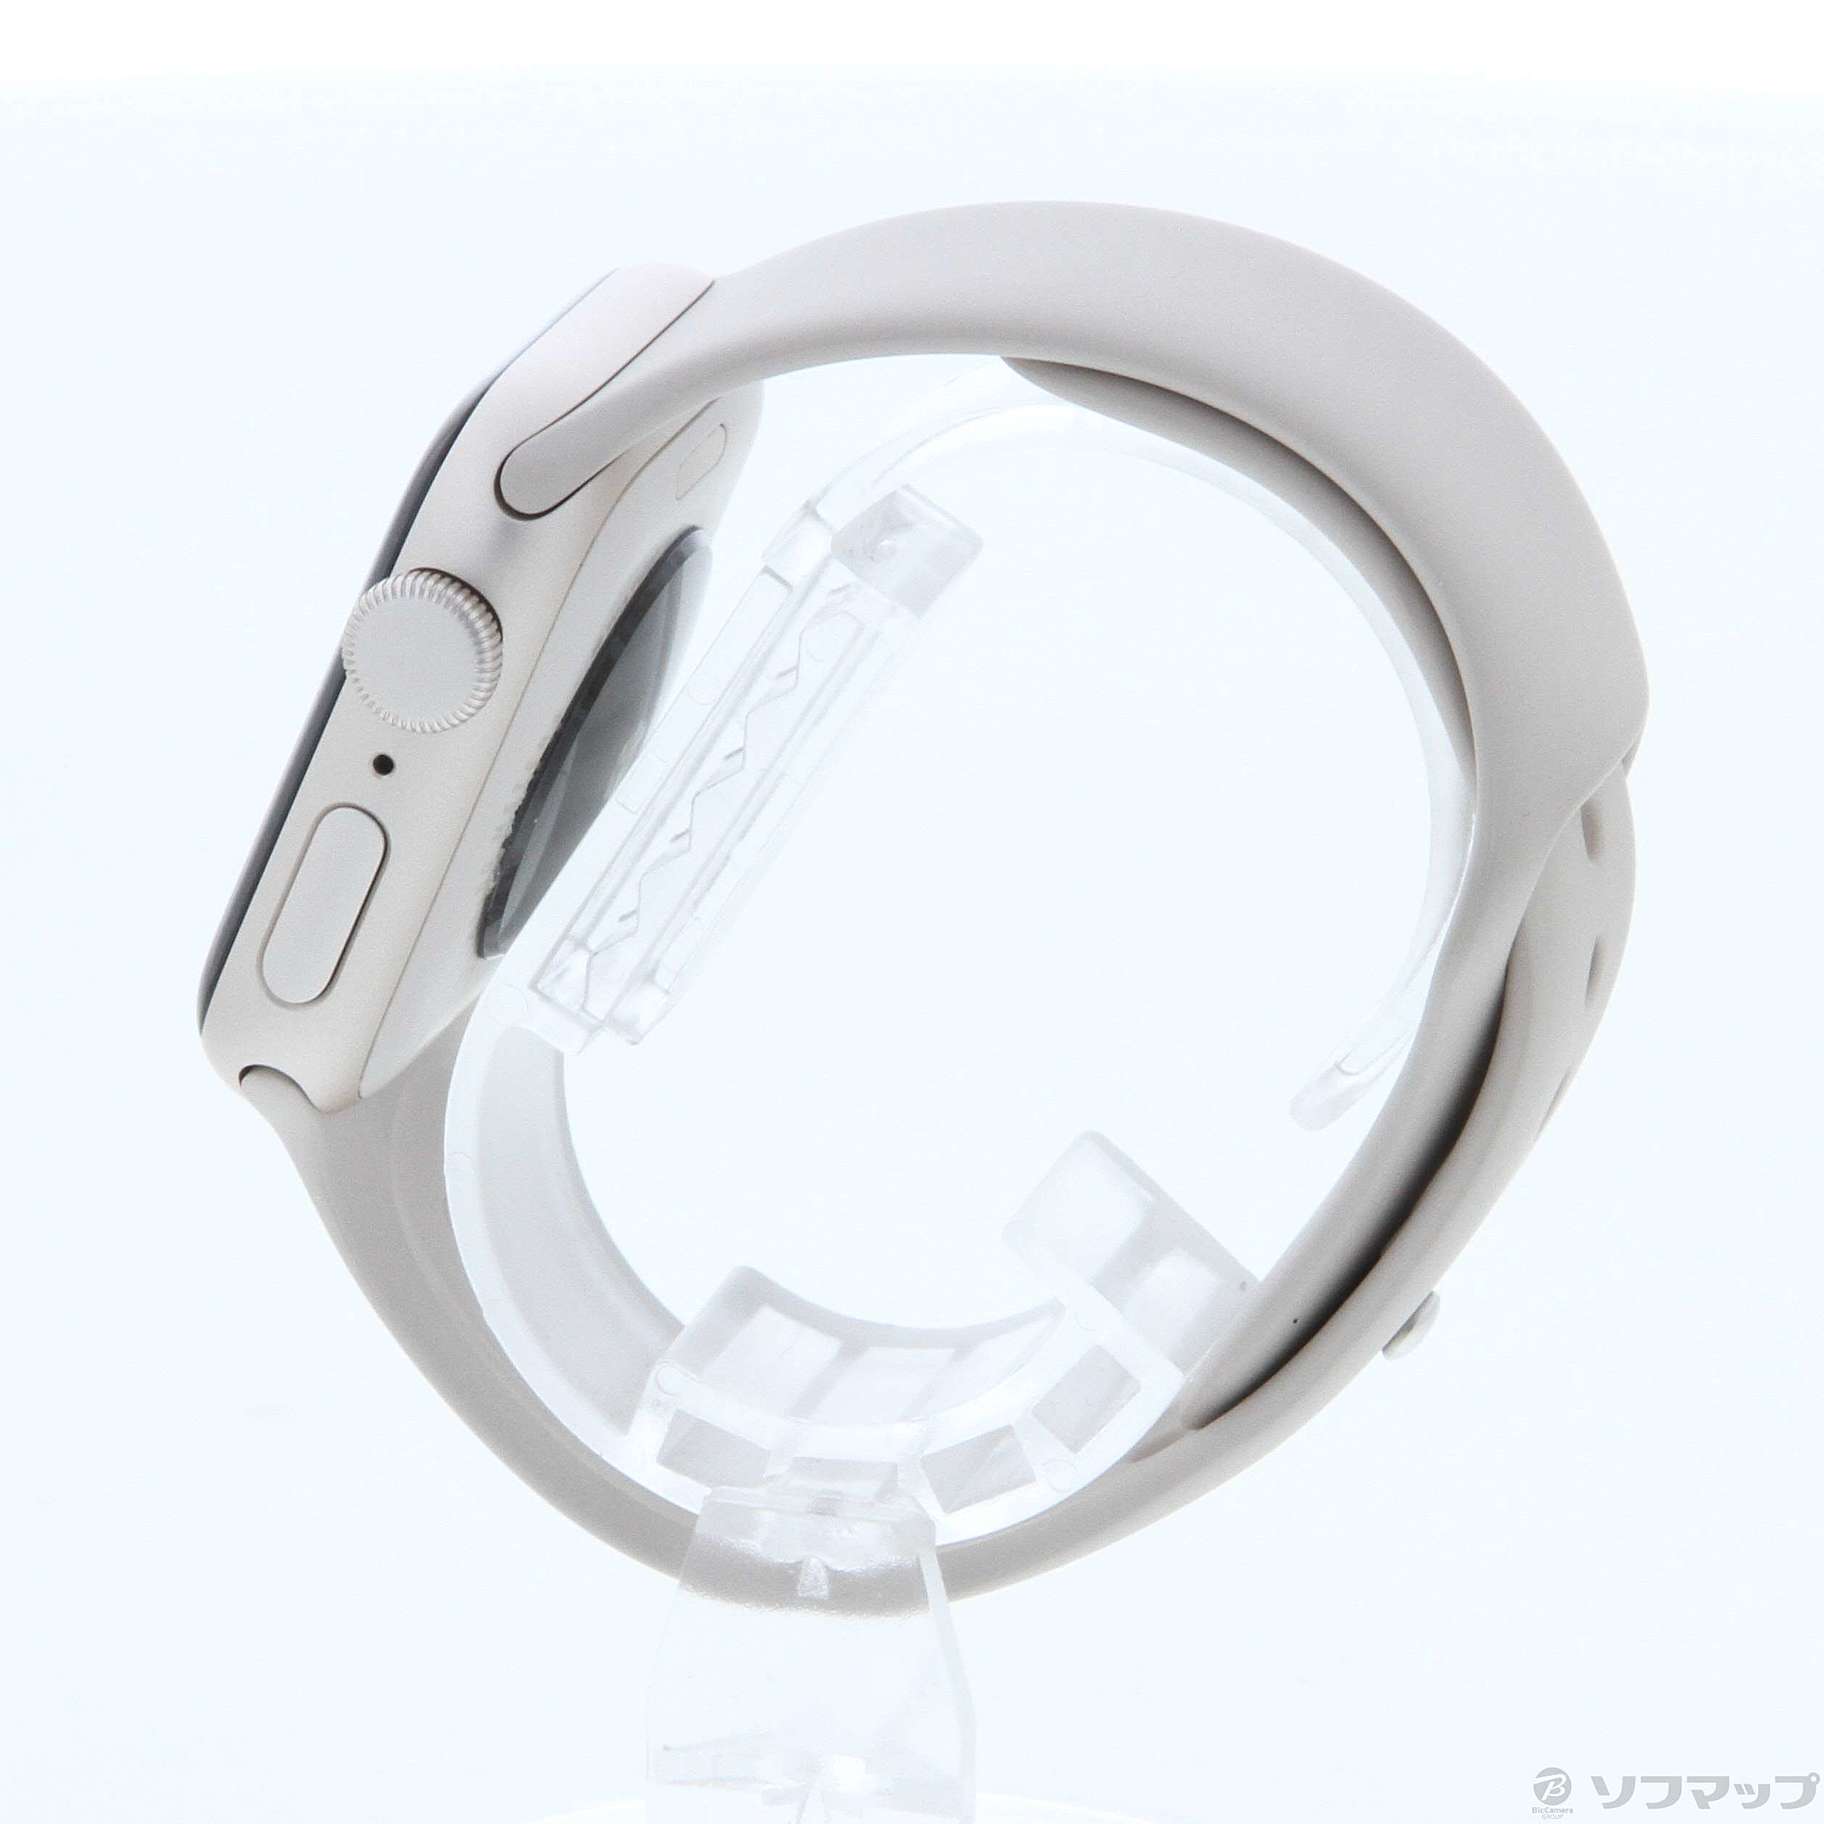 中古品〕 Apple Watch SE 第2世代 GPS 40mm スターライトアルミニウム 